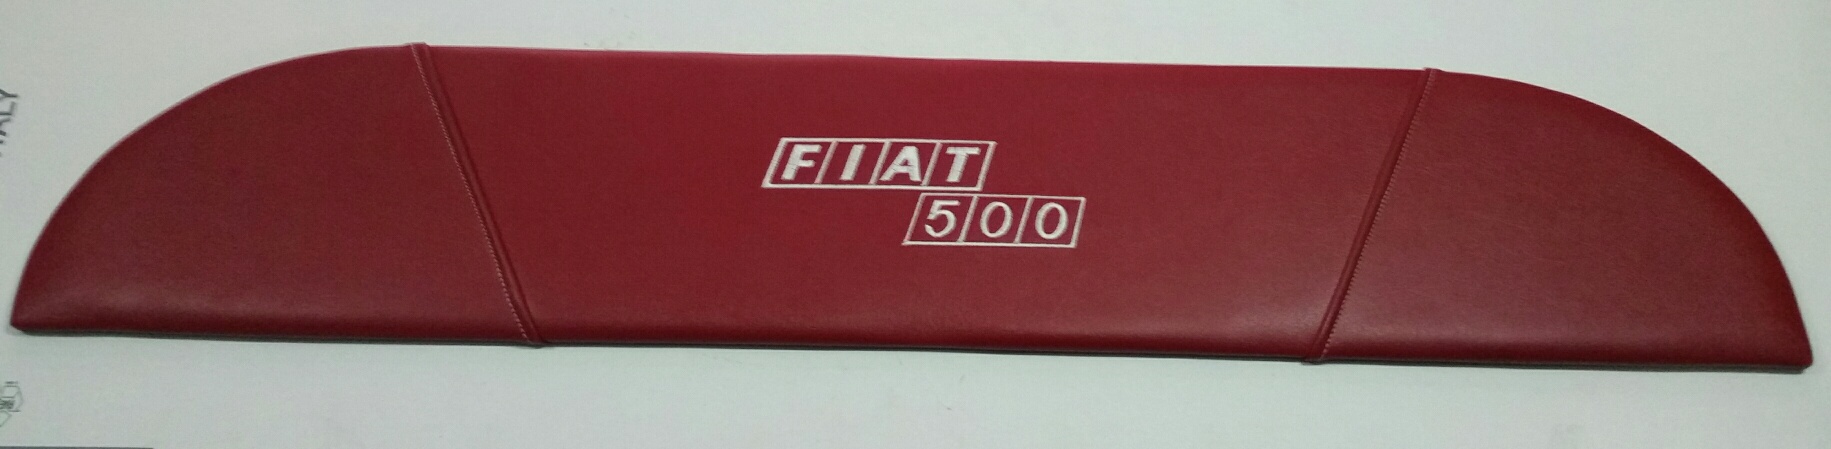 CAPPELLIERA PER FIAT 500 COLORE ROSSO C/LOGO FIAT 500 COD. TL002/F5